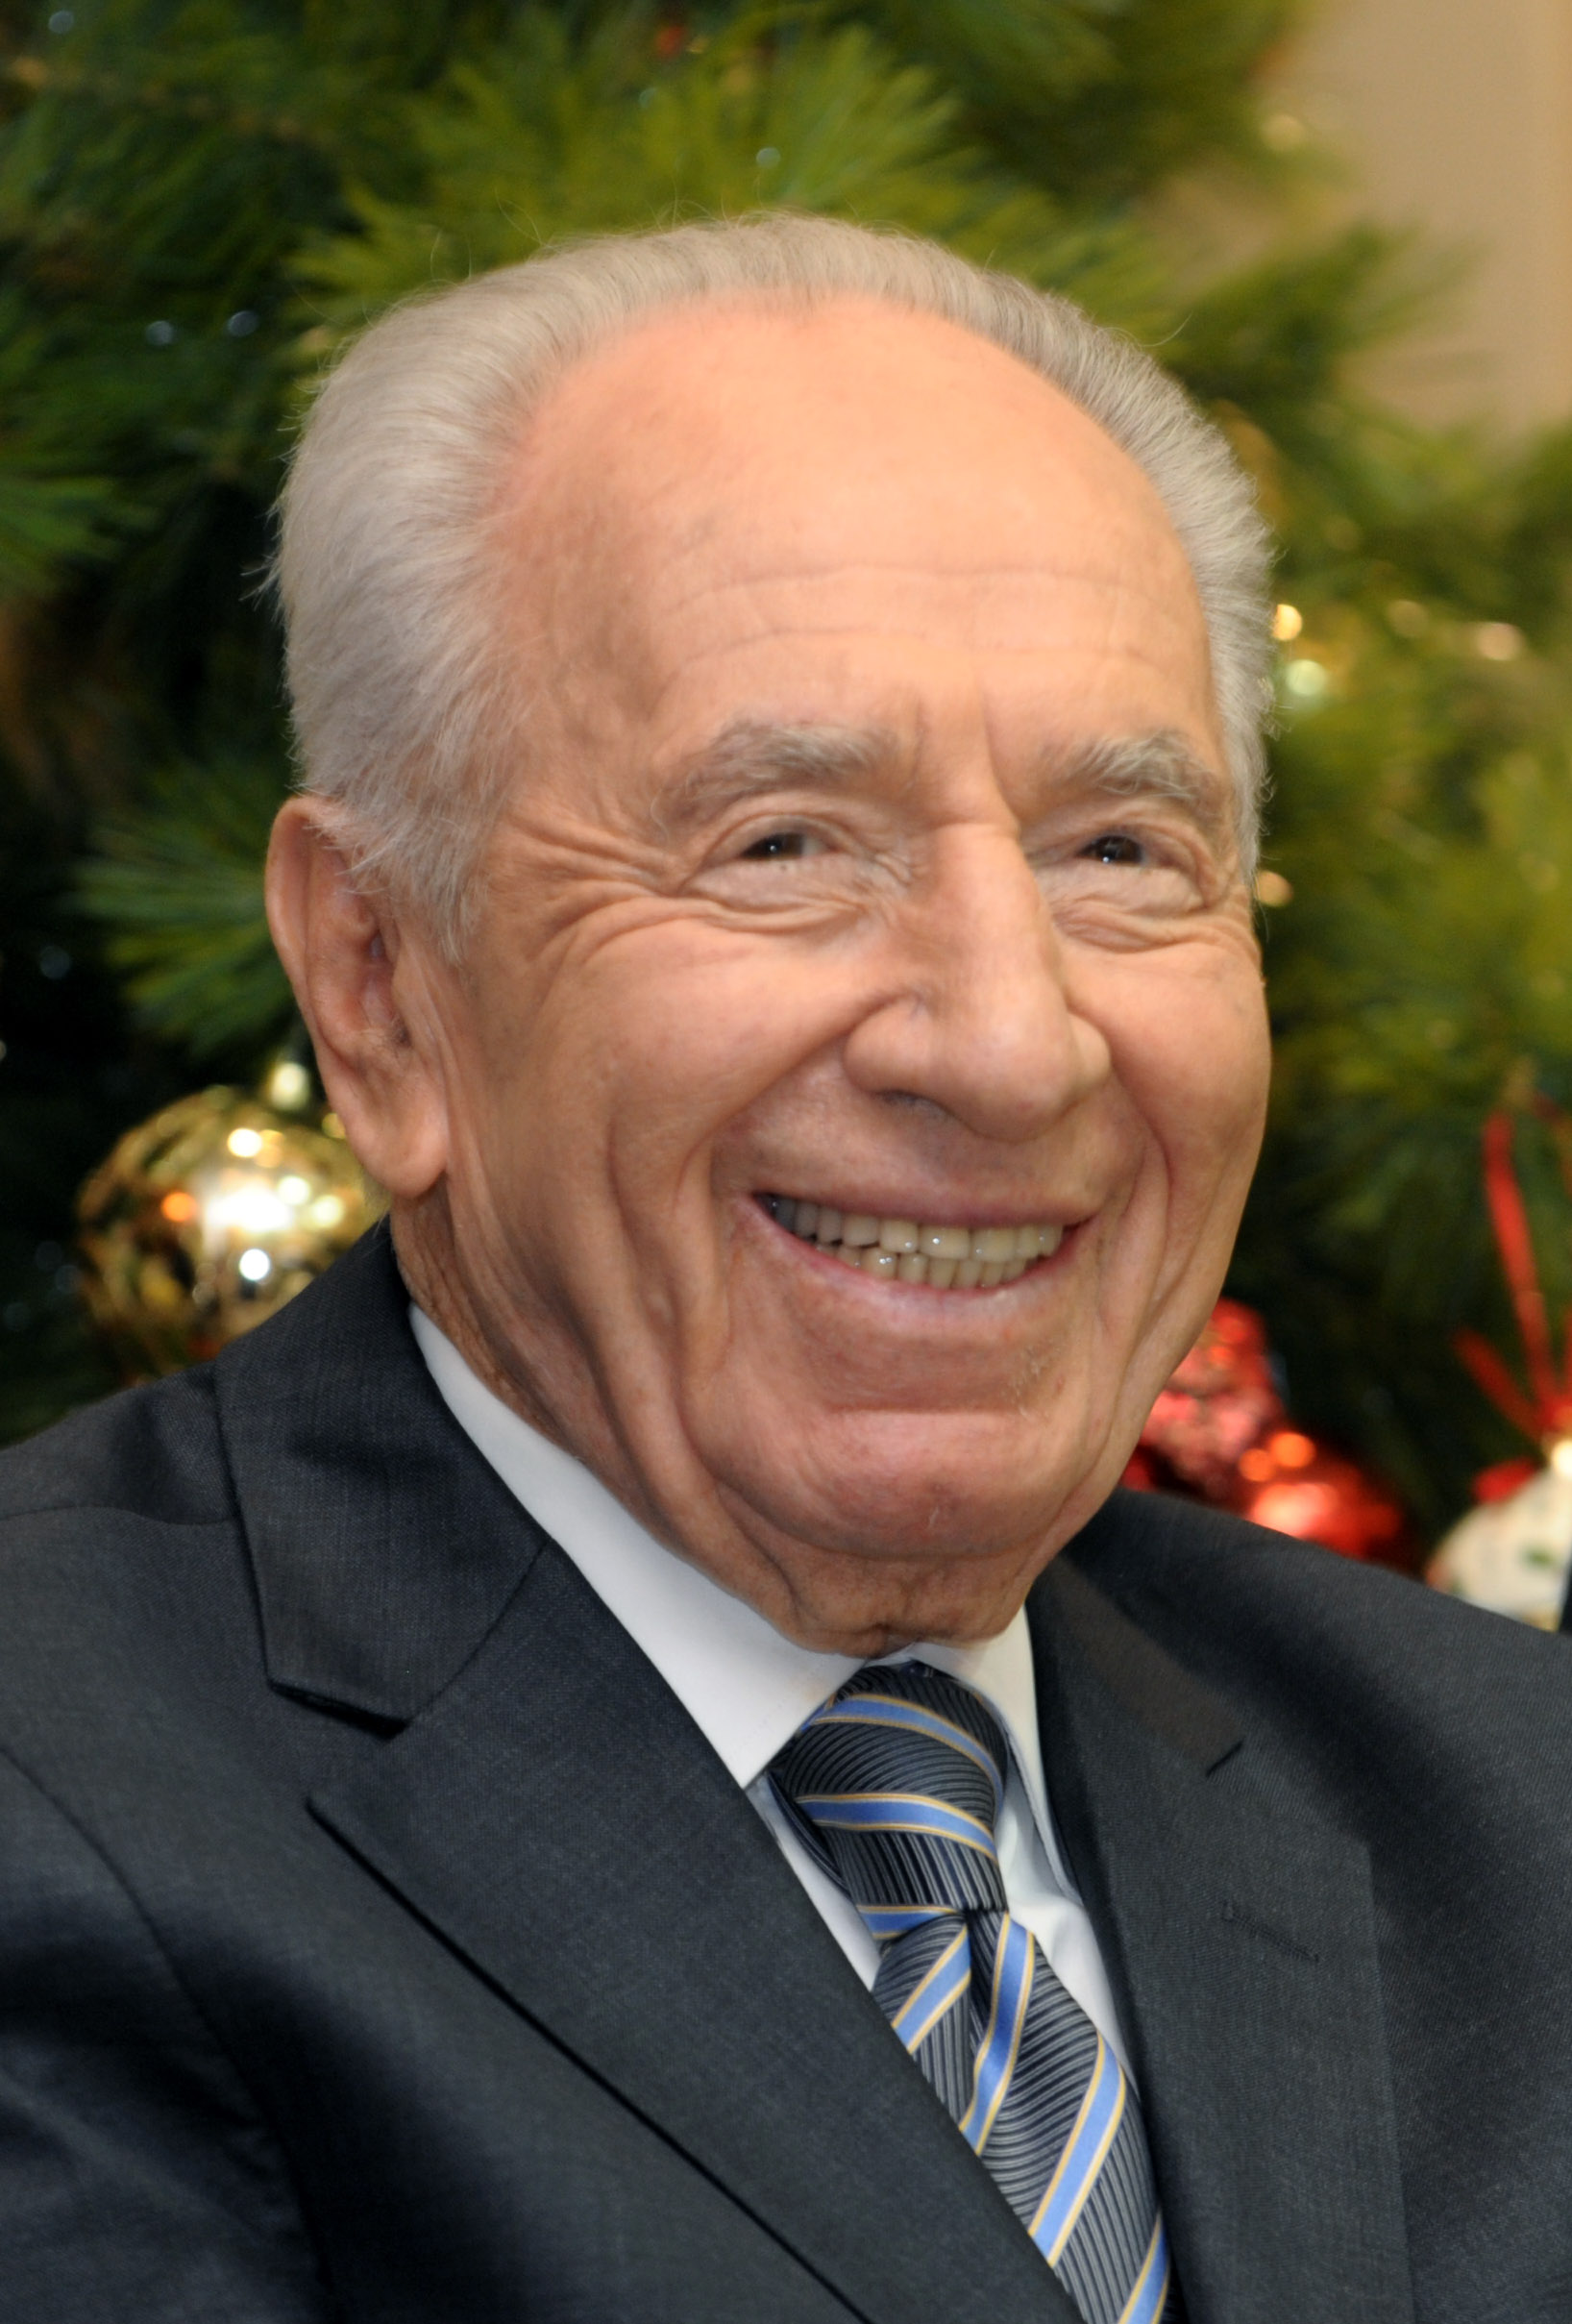 Shimon Peres, 1923-2016